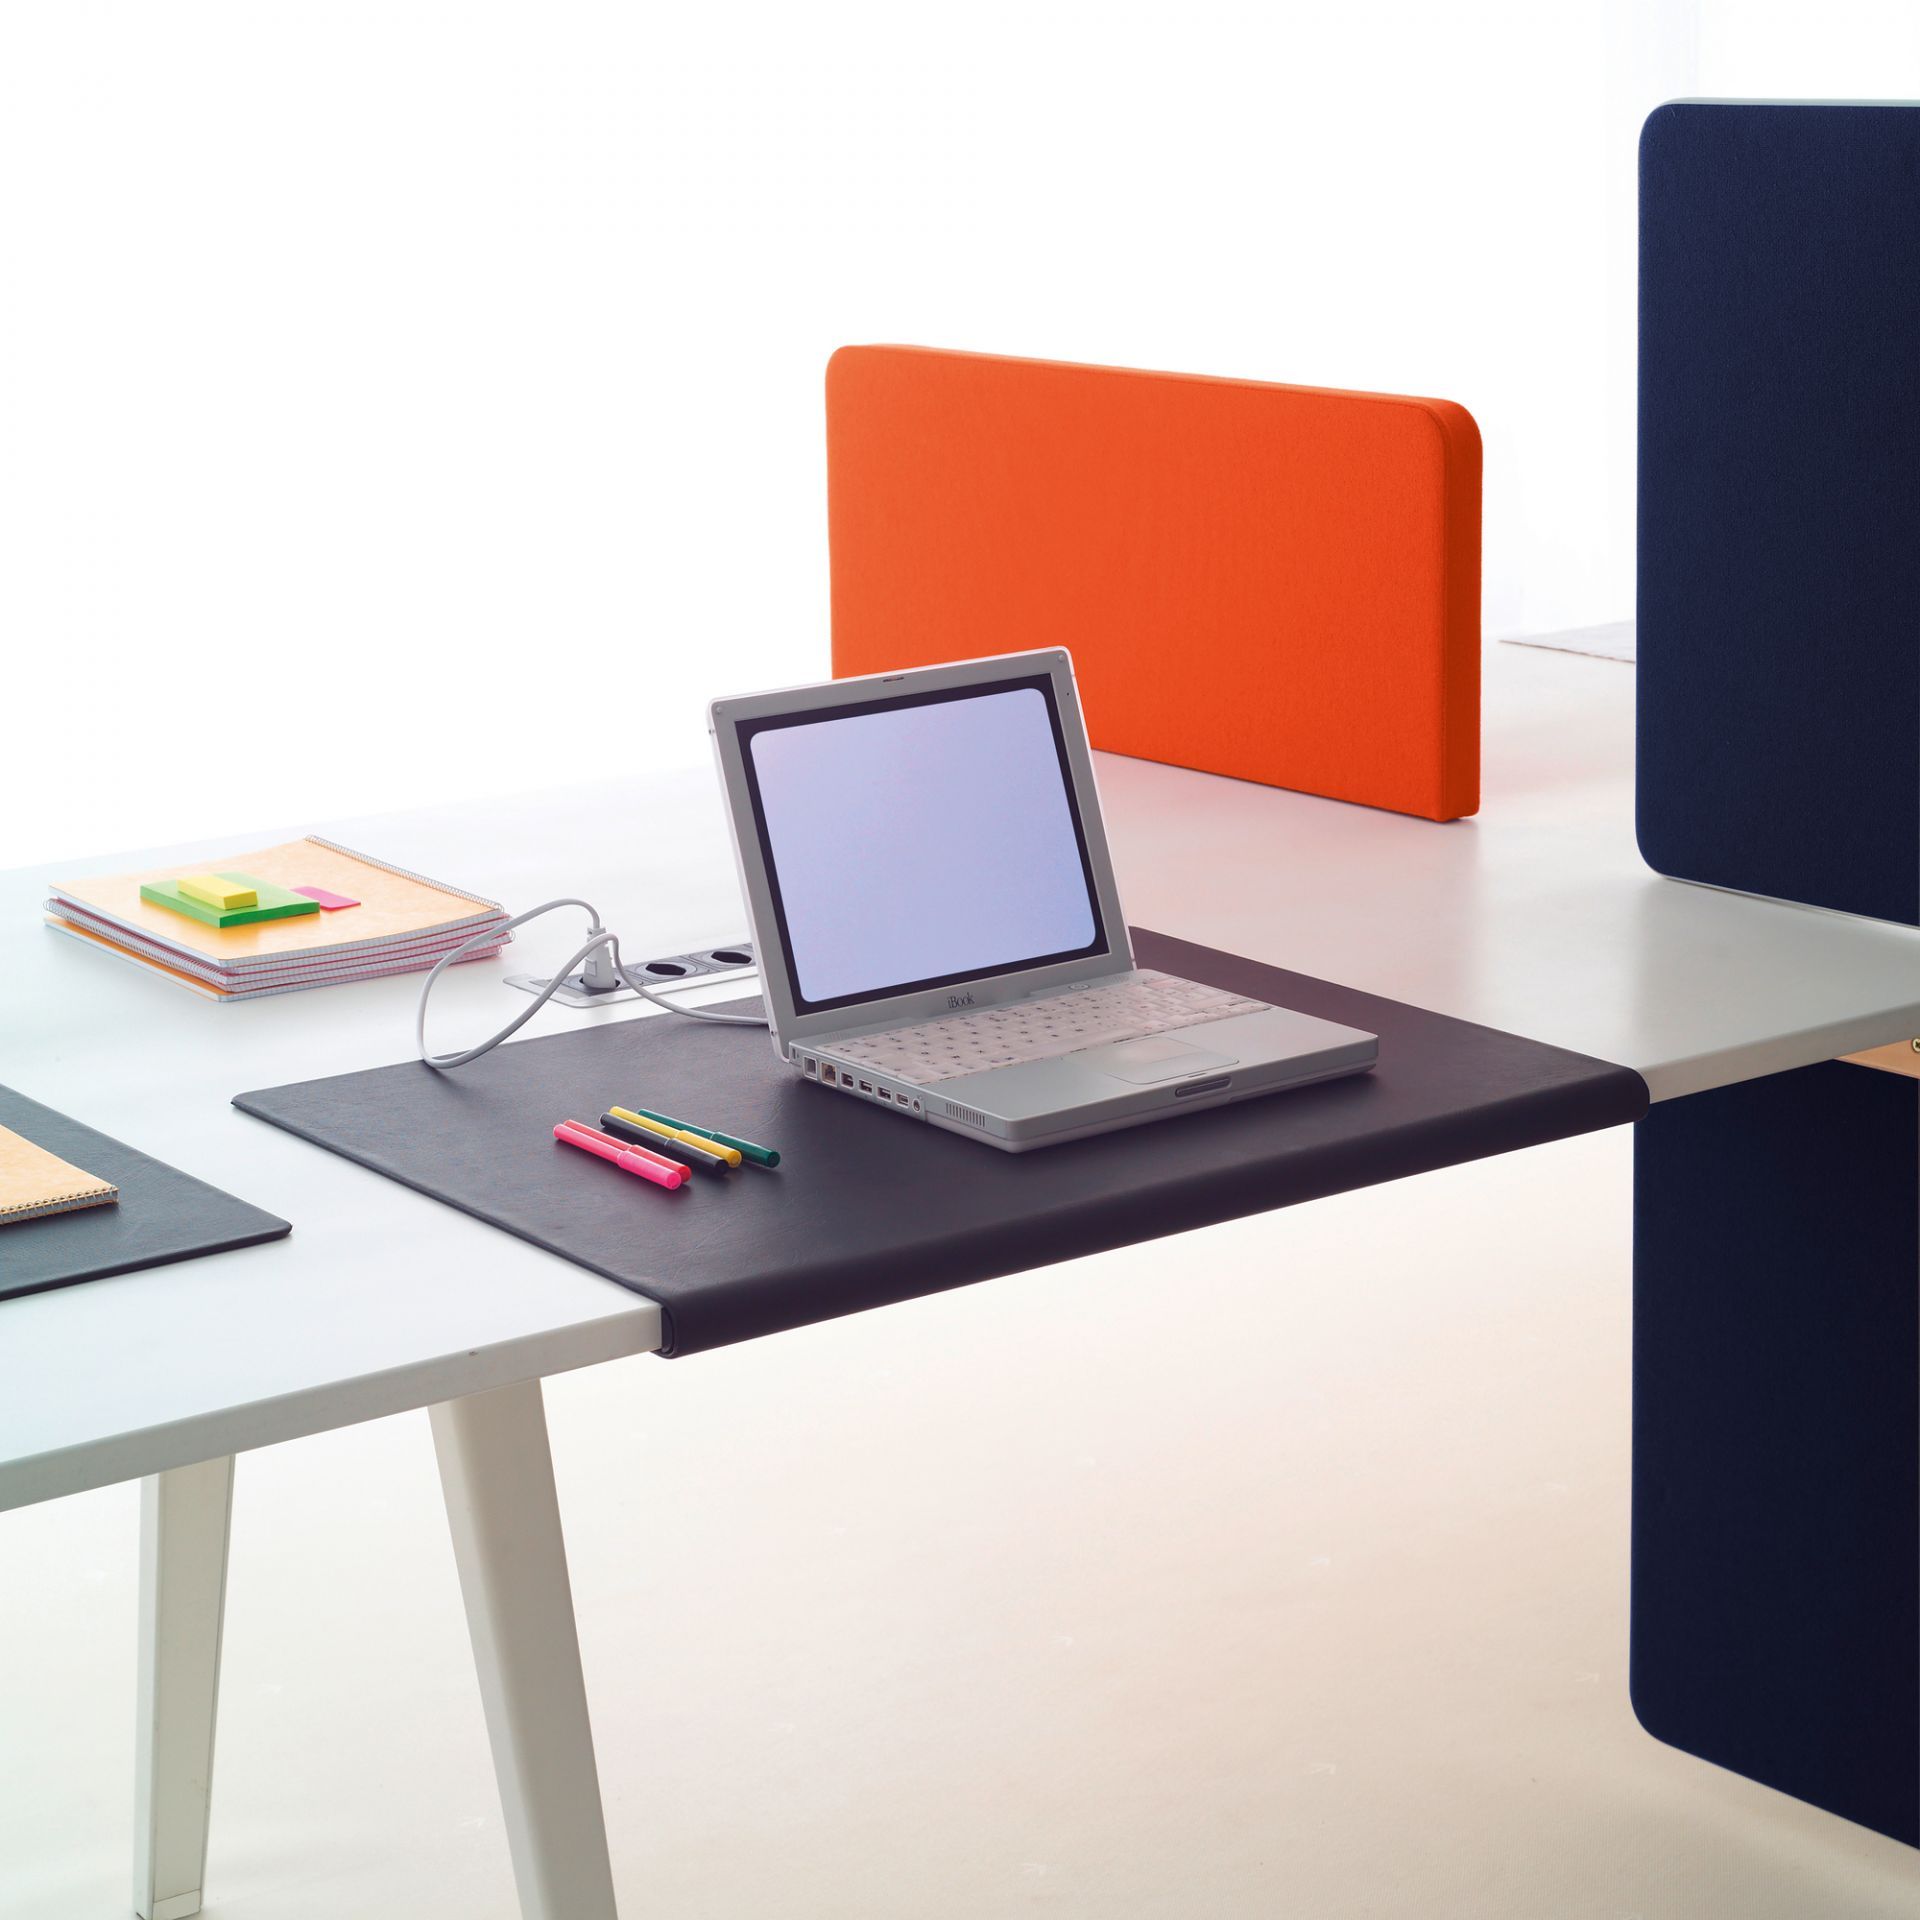 1 x Vitra Joyn Desk Pad in Black - Designed by Ronan & Erwan Bouroullec - Size: 70 x 50 cms - RRP £ - Image 6 of 7